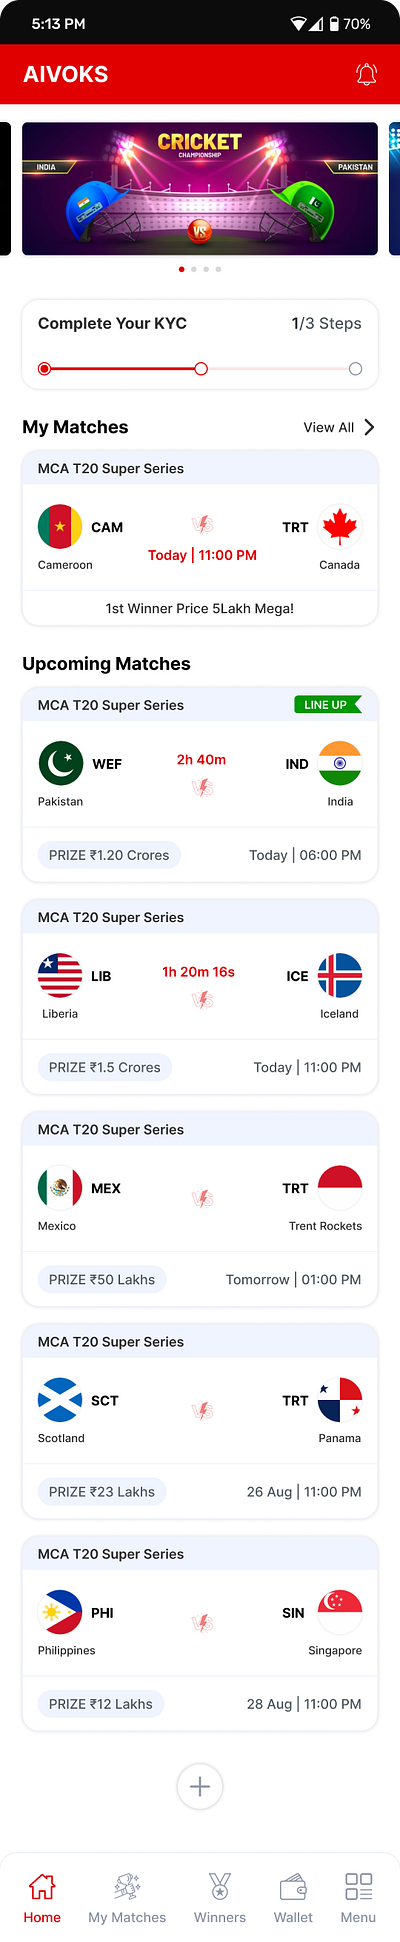 Cricket Mobile App UI Design cricket app cricket game game game design mobile app mobile app design ui ui design